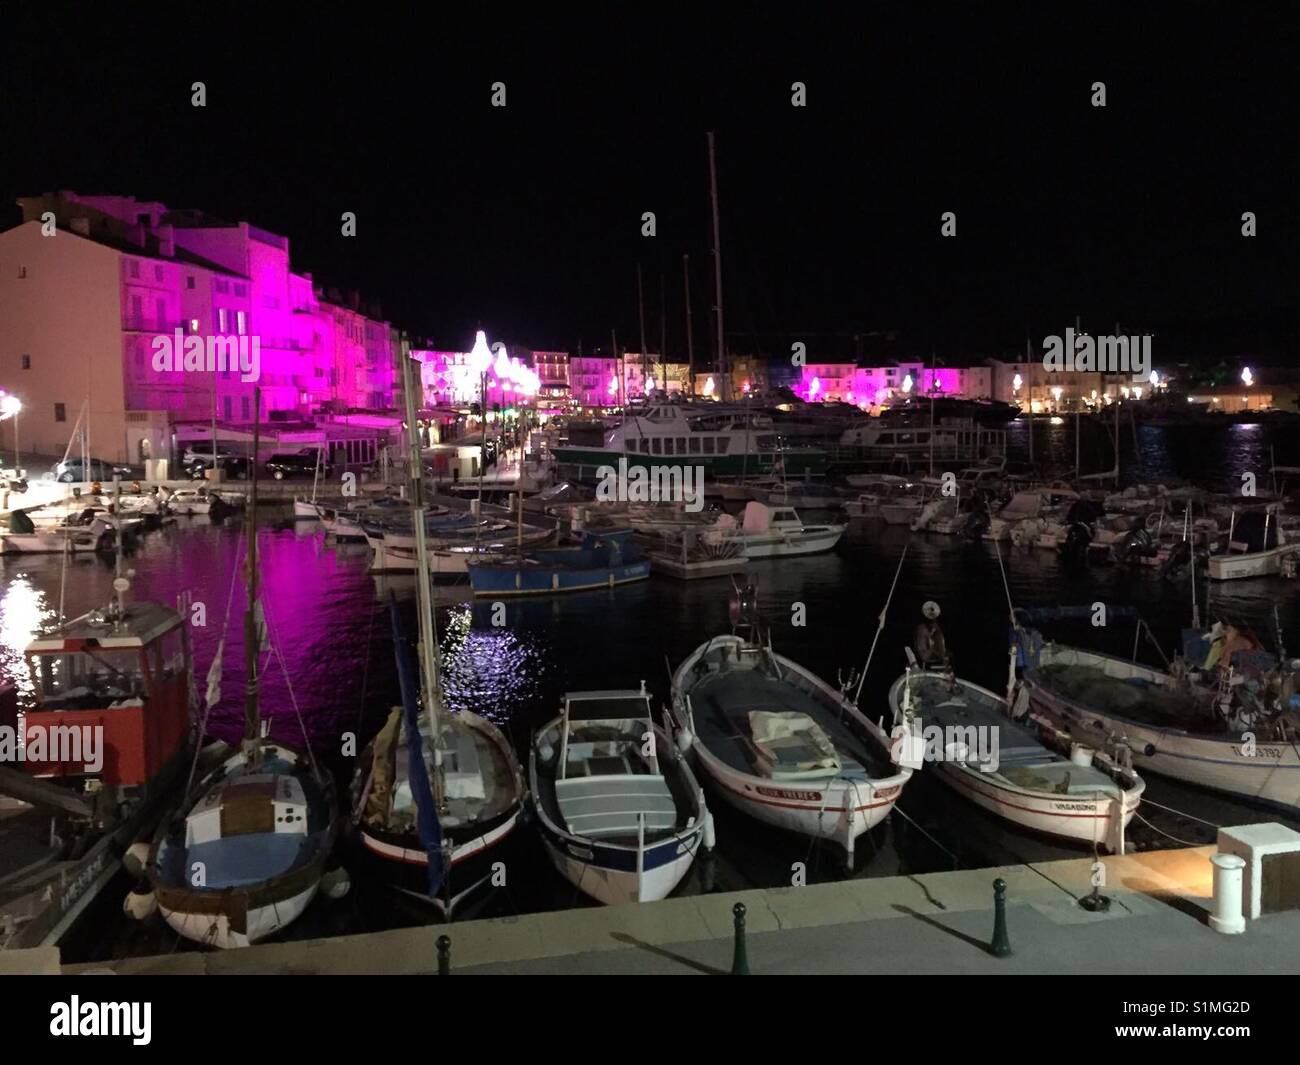 St. Tropez, Côte D'Azur, Südfrankreich, berühmte Bucht, Yachthafen, boote, Fischerboote, Segelboote, Beleuchtung zu Weihnachten, lila Licht, BB Stock Photo